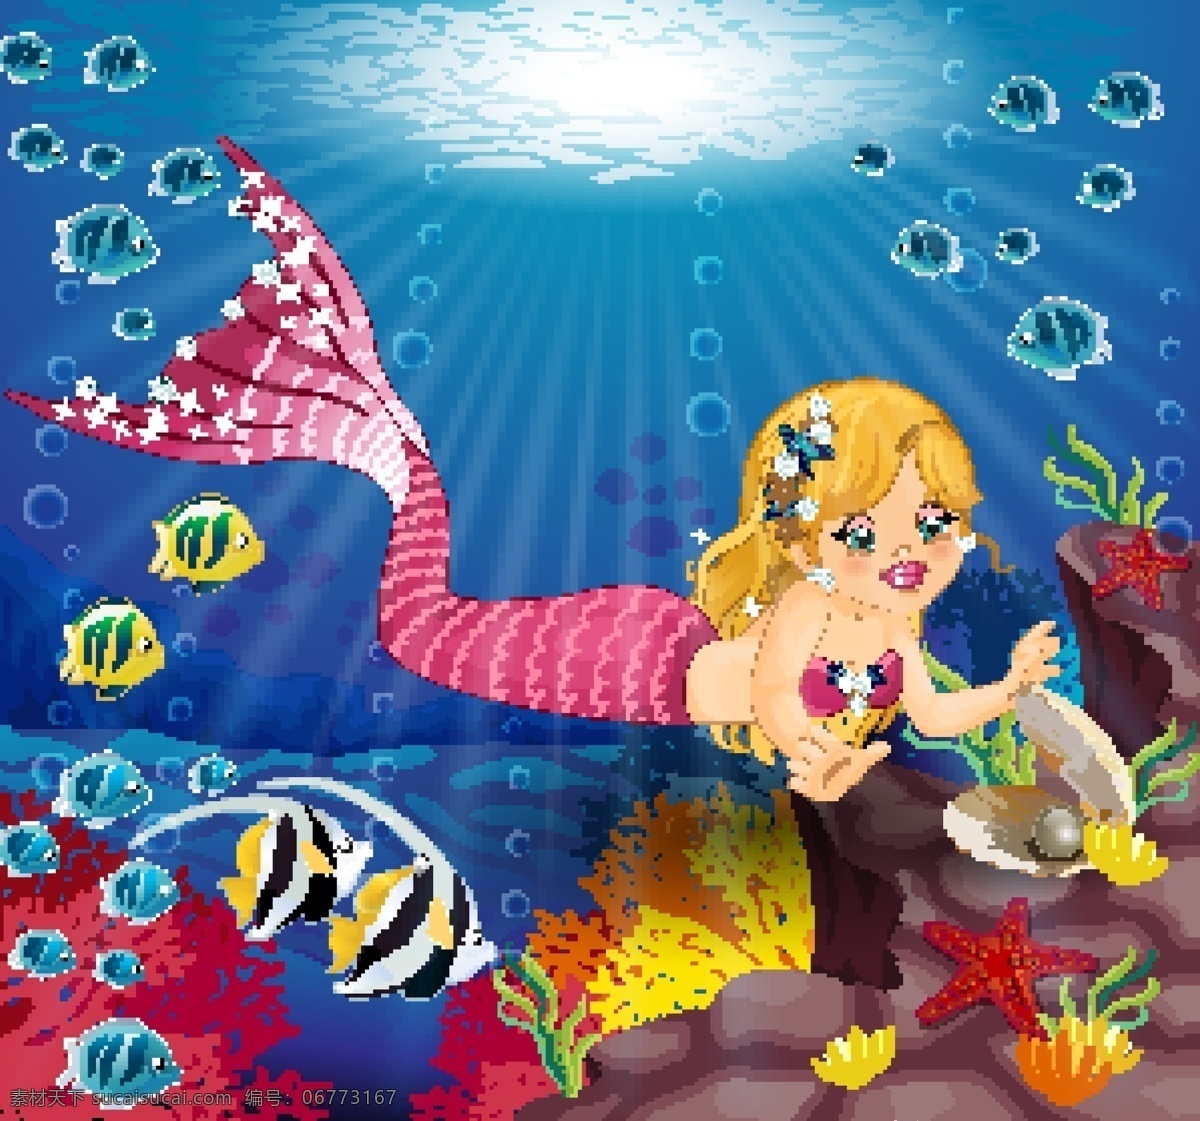 手绘 可爱 卡通 美人鱼 海底 世界 插画 海底世界 动漫动画 动漫人物